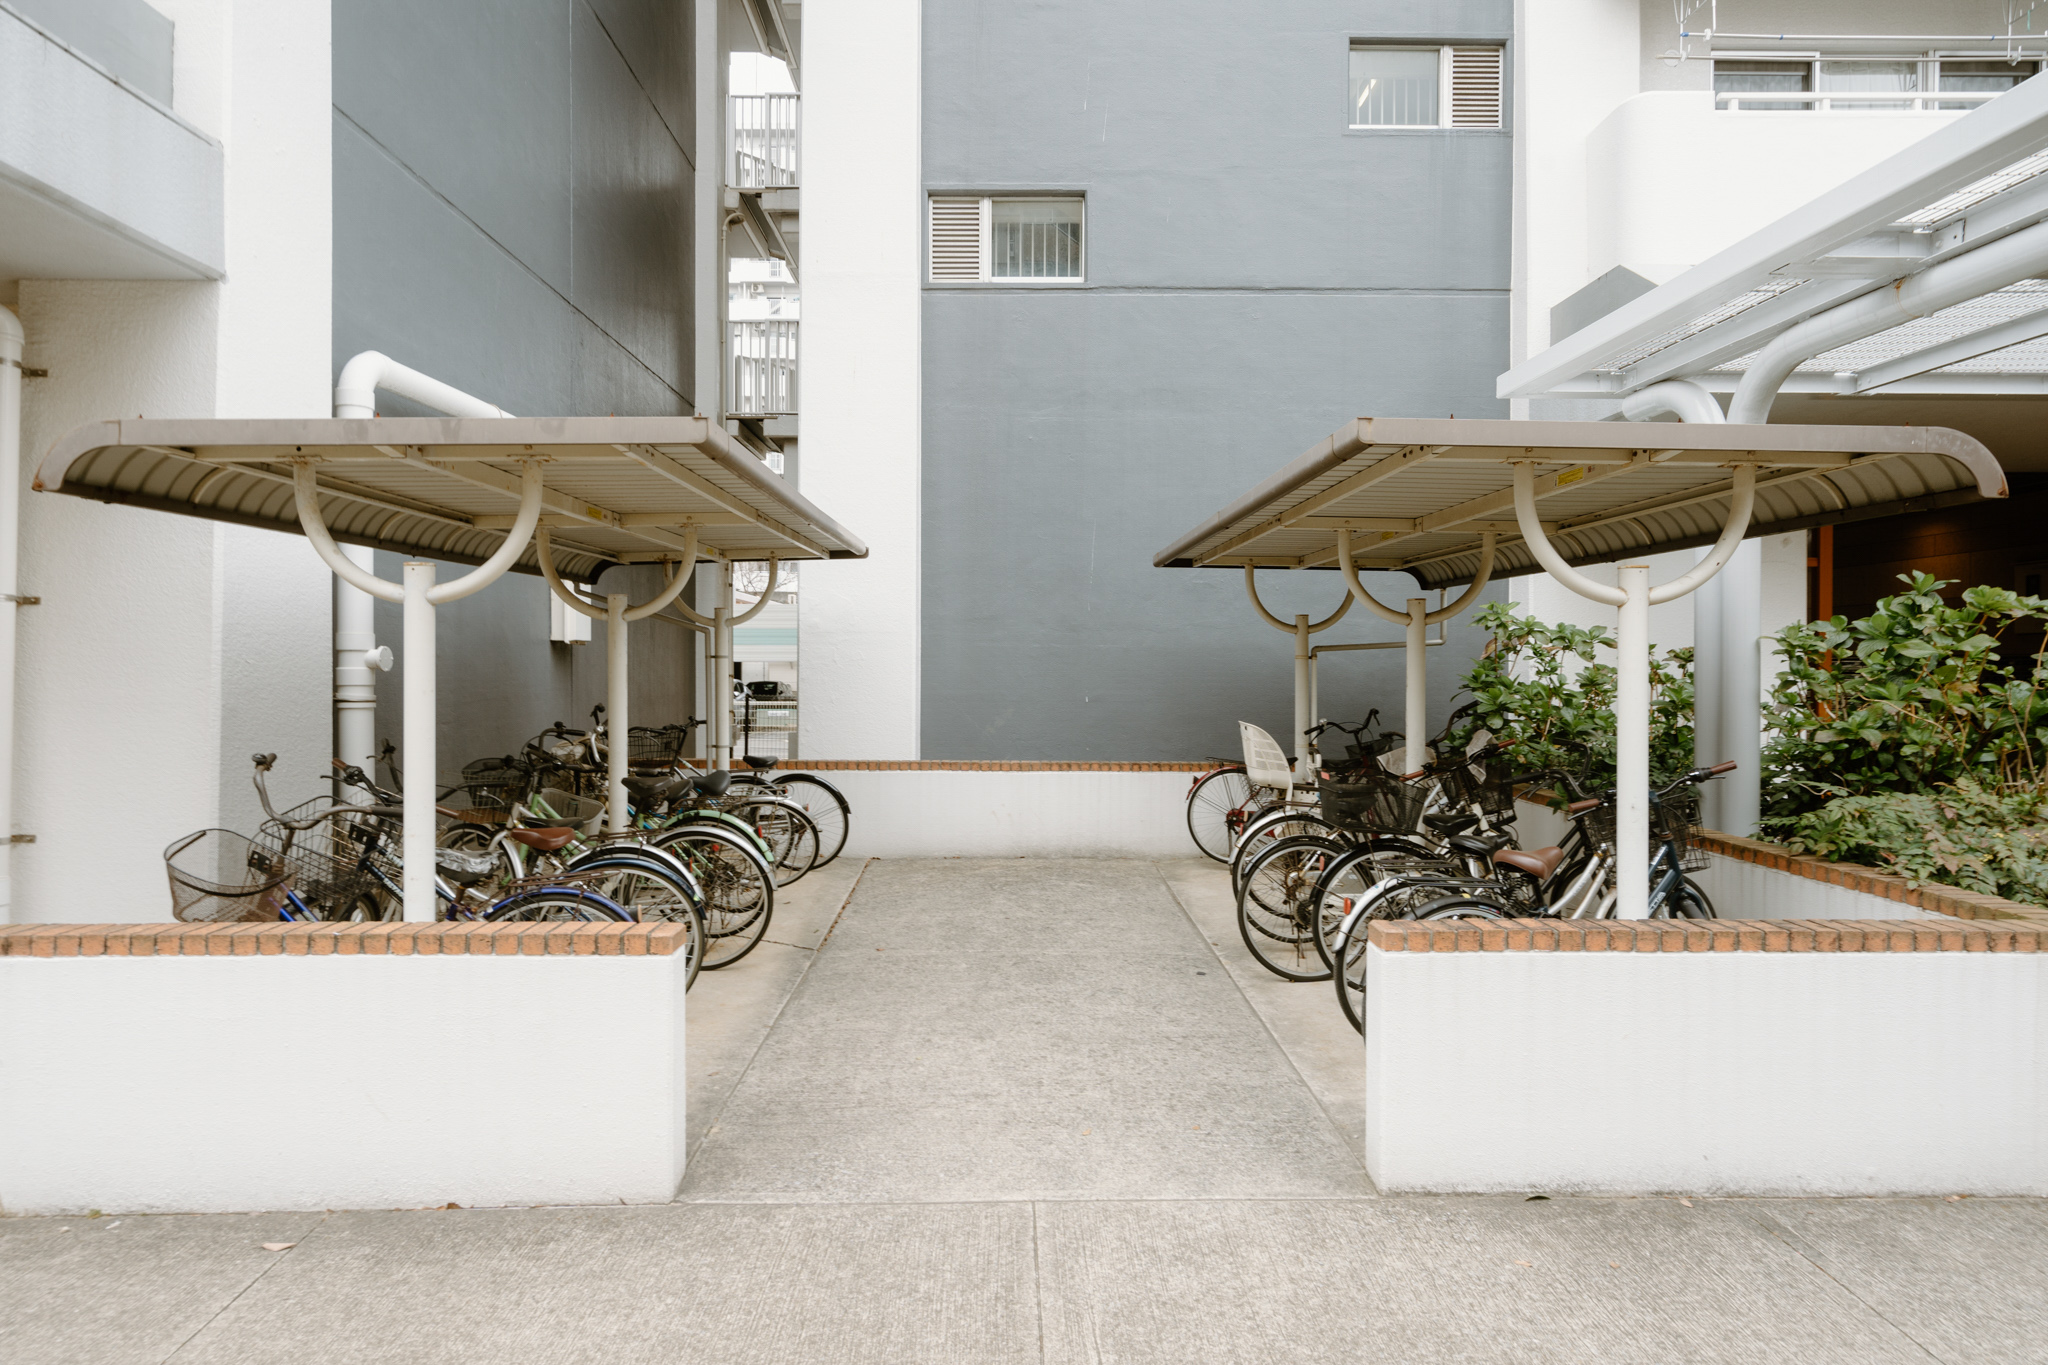 それぞれの棟には、駐輪場が併設されています。駅を利用する際には、バスだけでなく自転車利用の方も多いそうなので、かなりの台数が駐輪されていました。